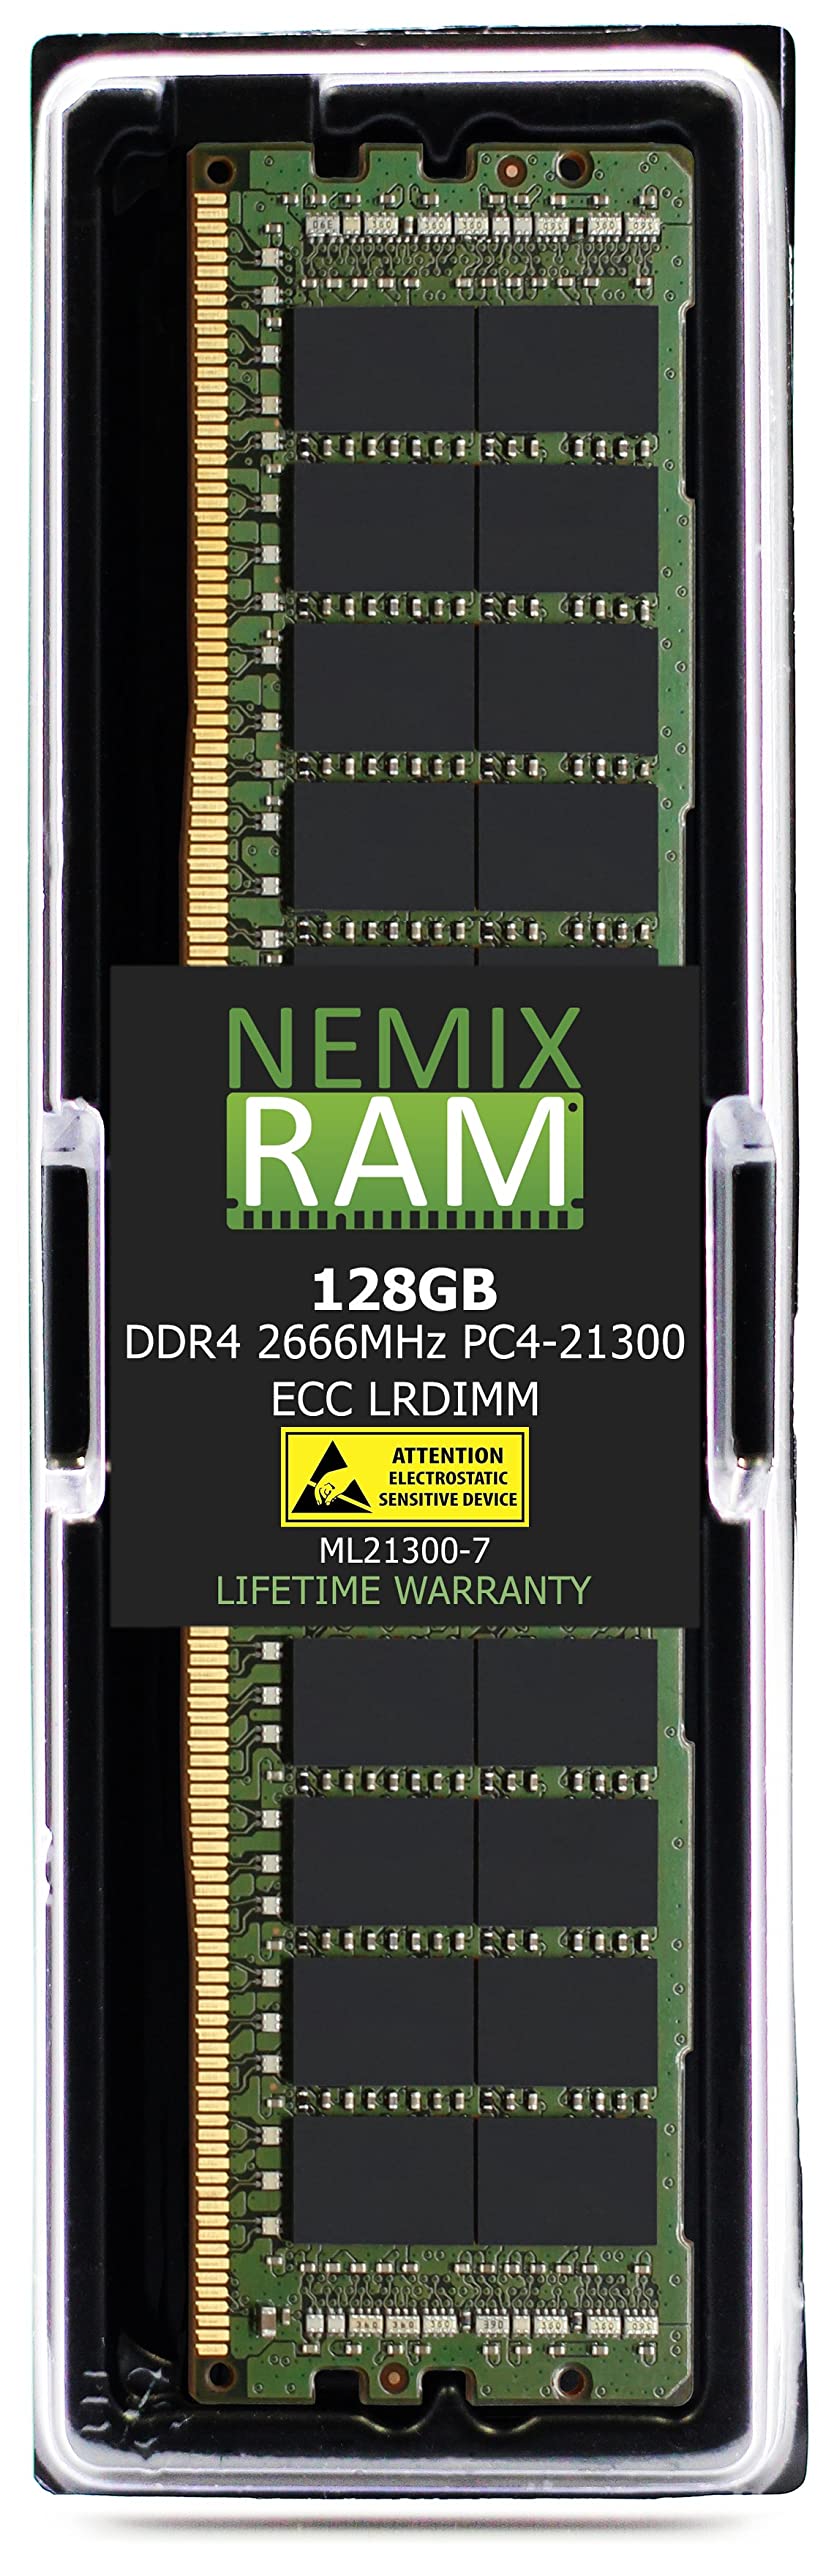 NEMIX RAM 128GB 1X128GB DDR4-2666 PC4-21300 ECC LRDIMM 負荷軽減サーバーメモリアップグレード EMC Dell Powe